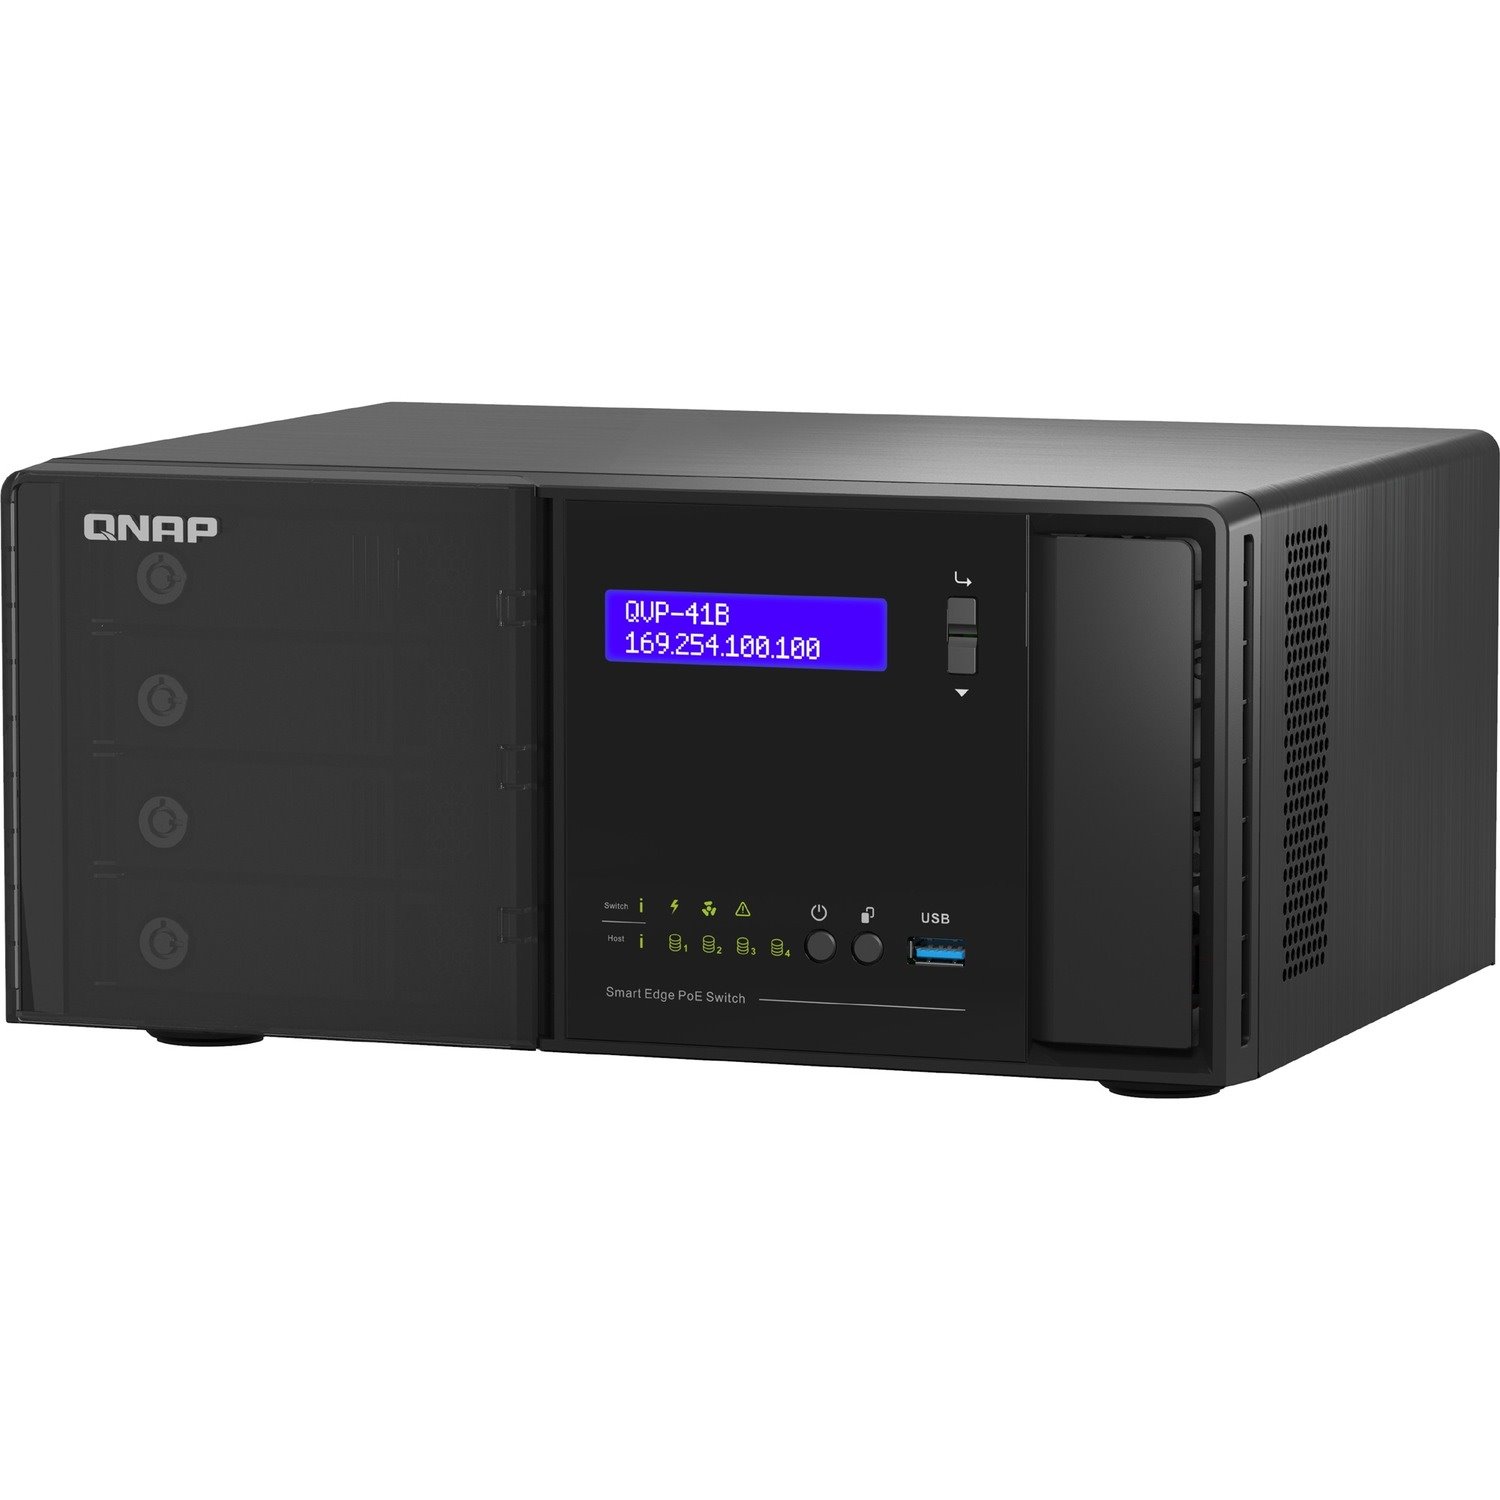 QNAP NVR Server X Smart PoE Switch, Building Complete Surveillance Network